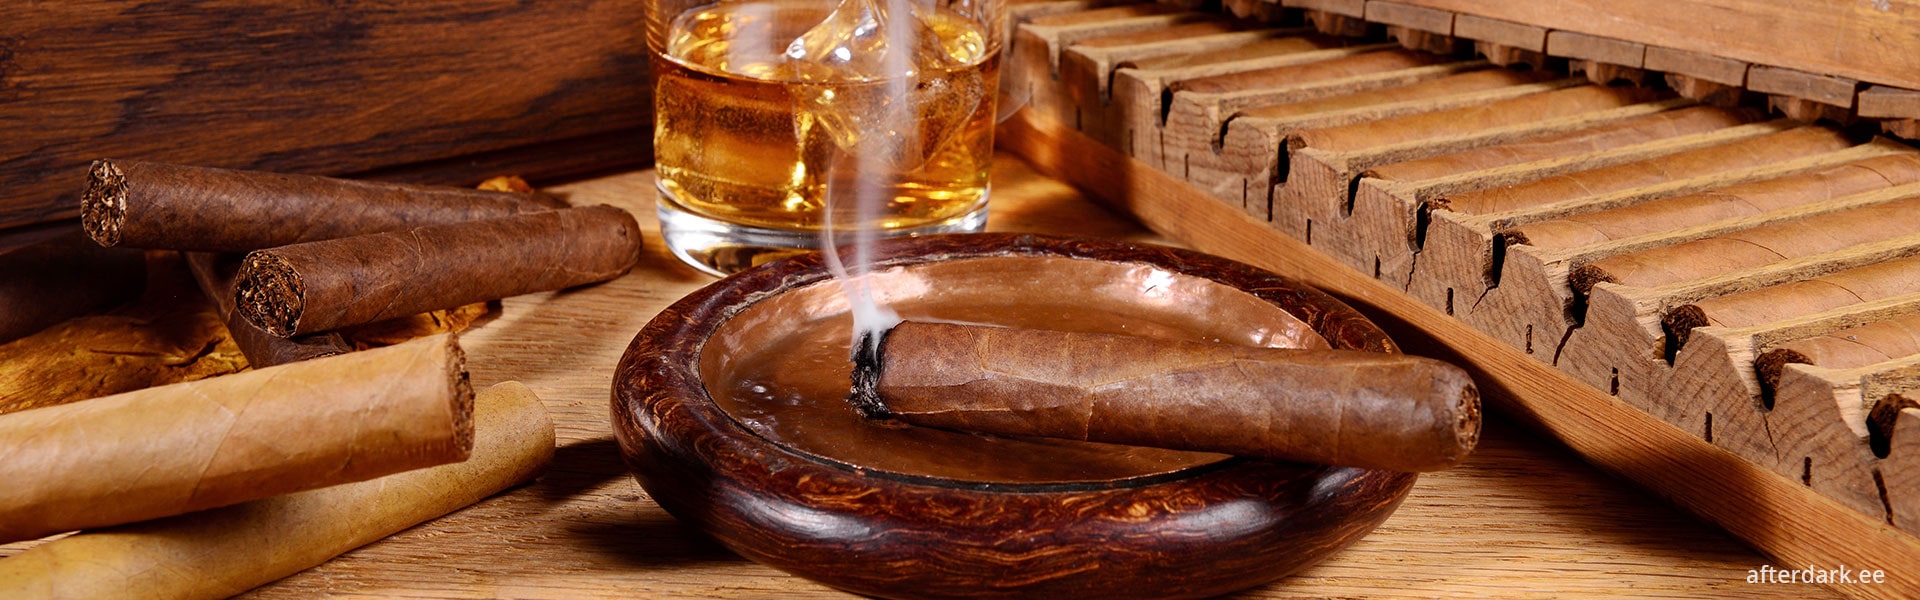 Cuban Cigar Rolling Workshop in Tallinn